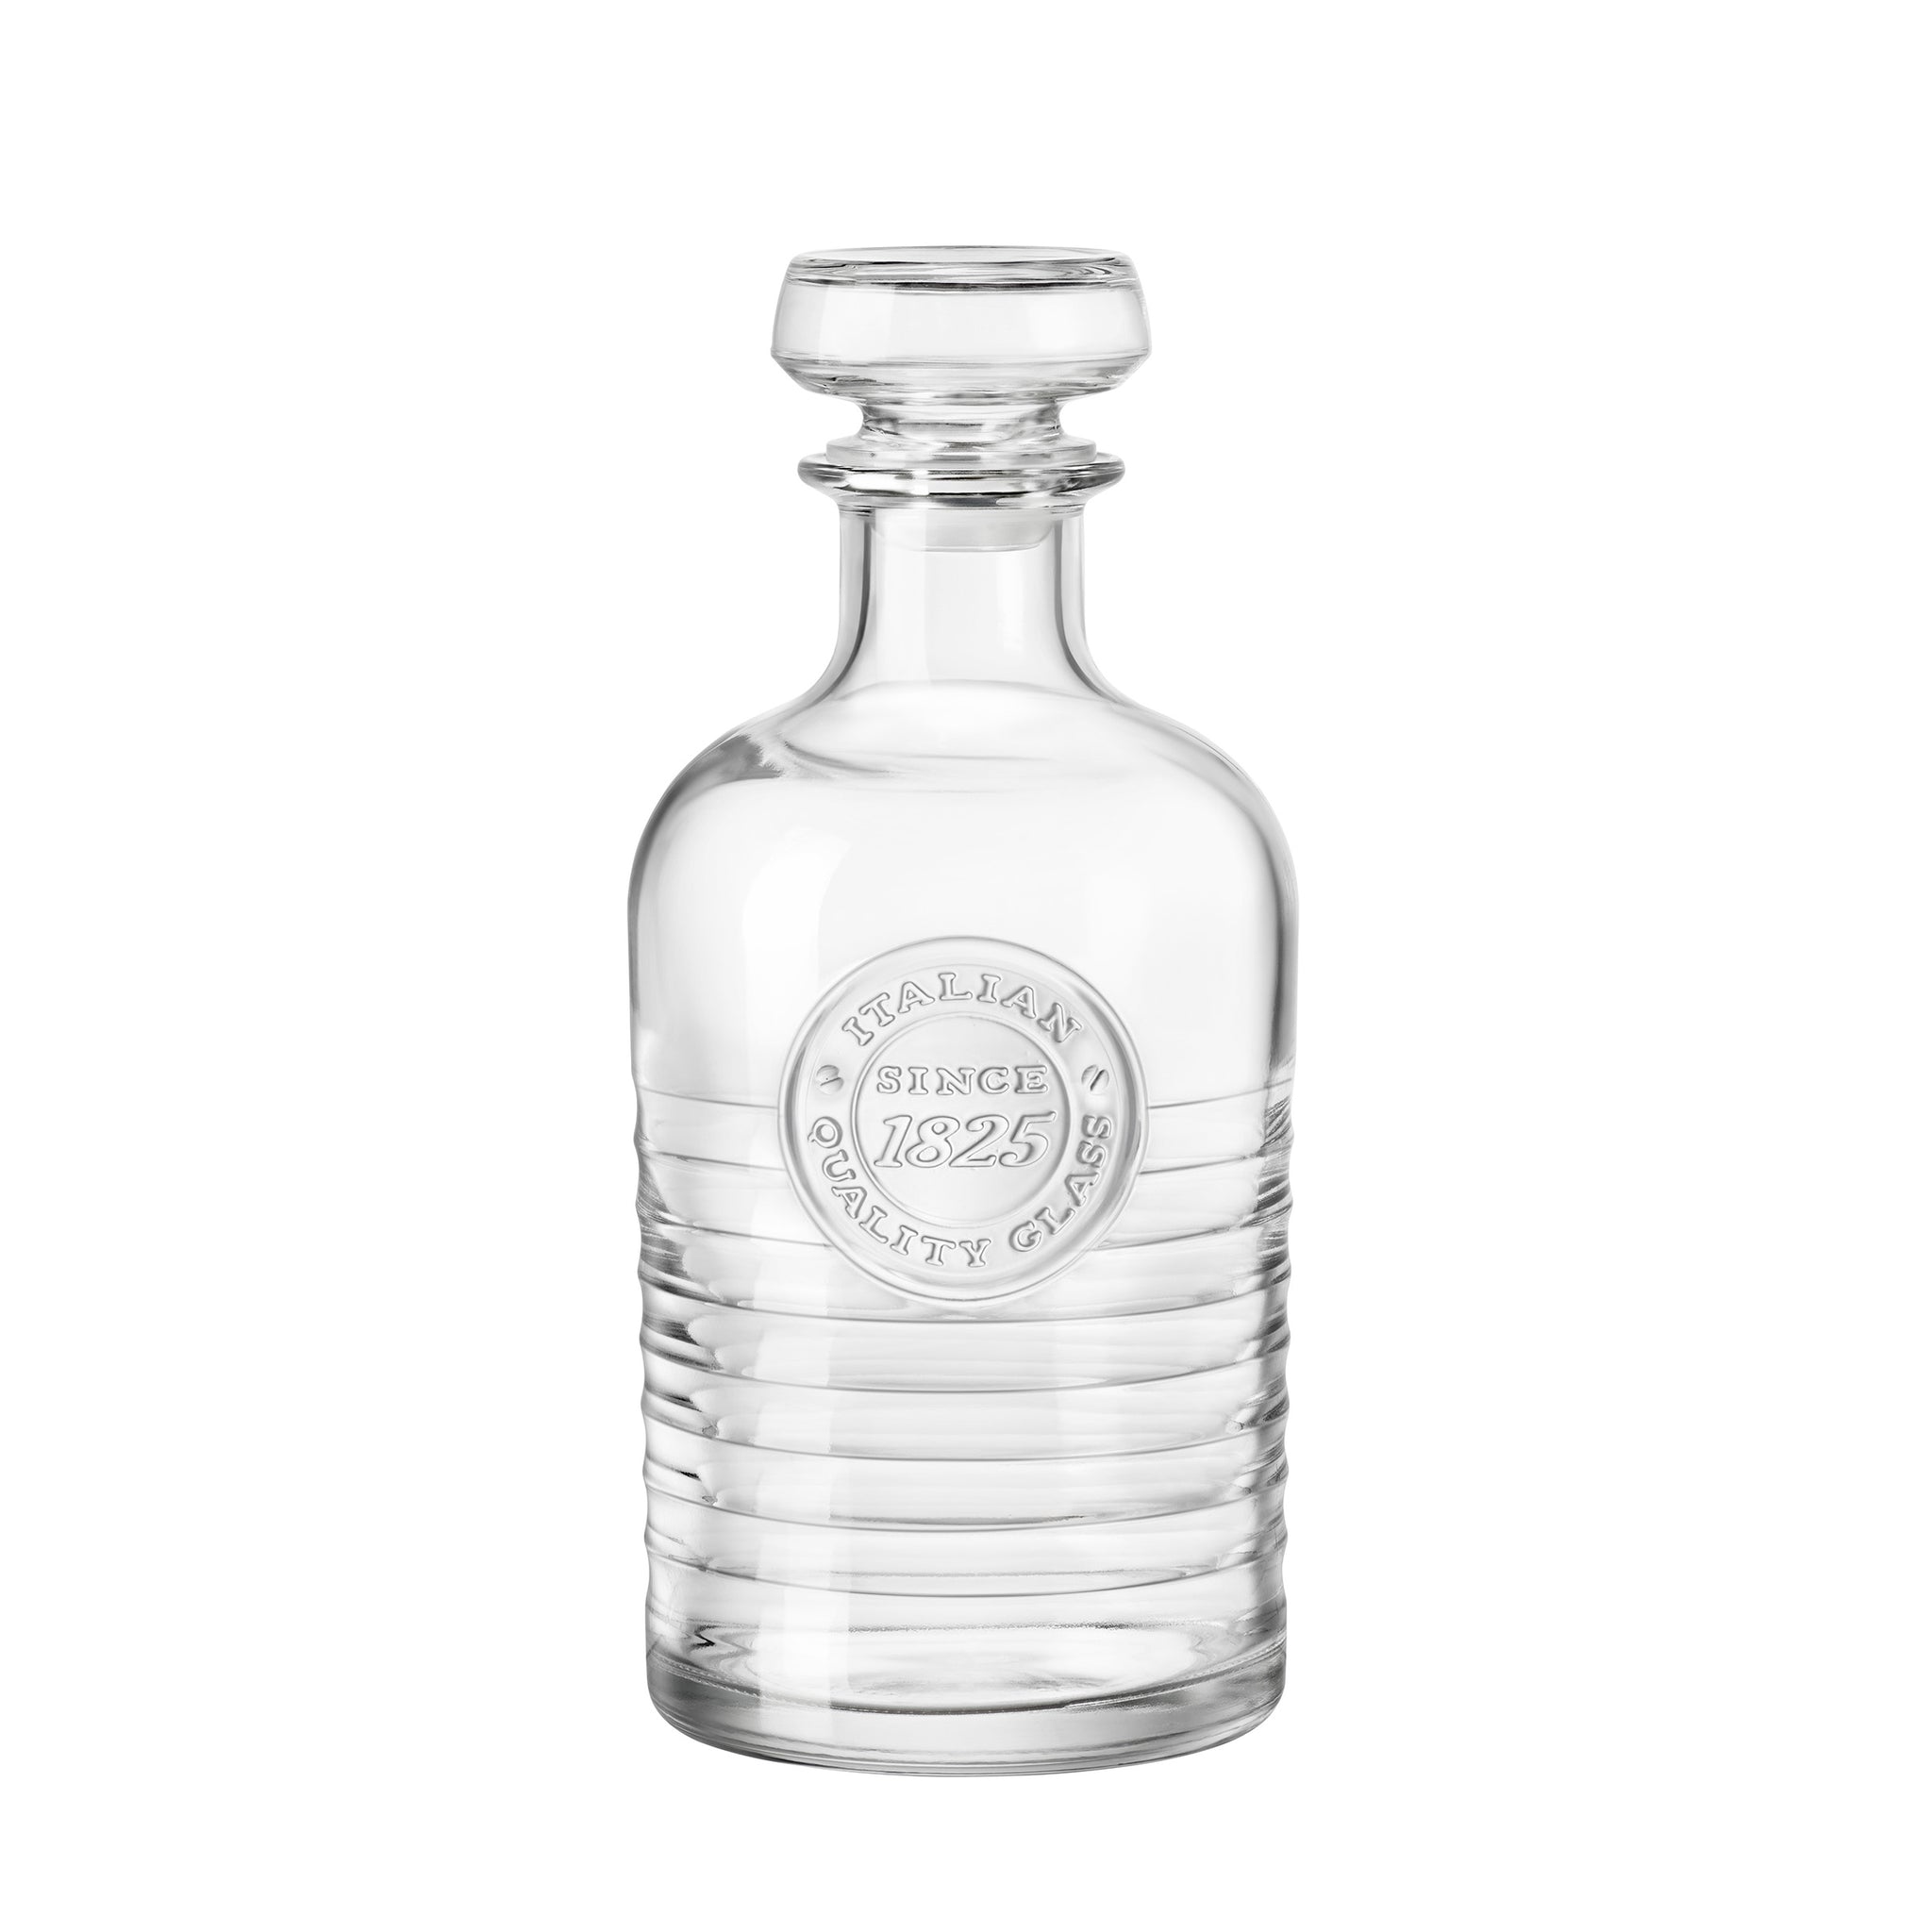 Bormioli Rocco Officina 1825 33.75 oz. Whiskey Decanter (1 piece)